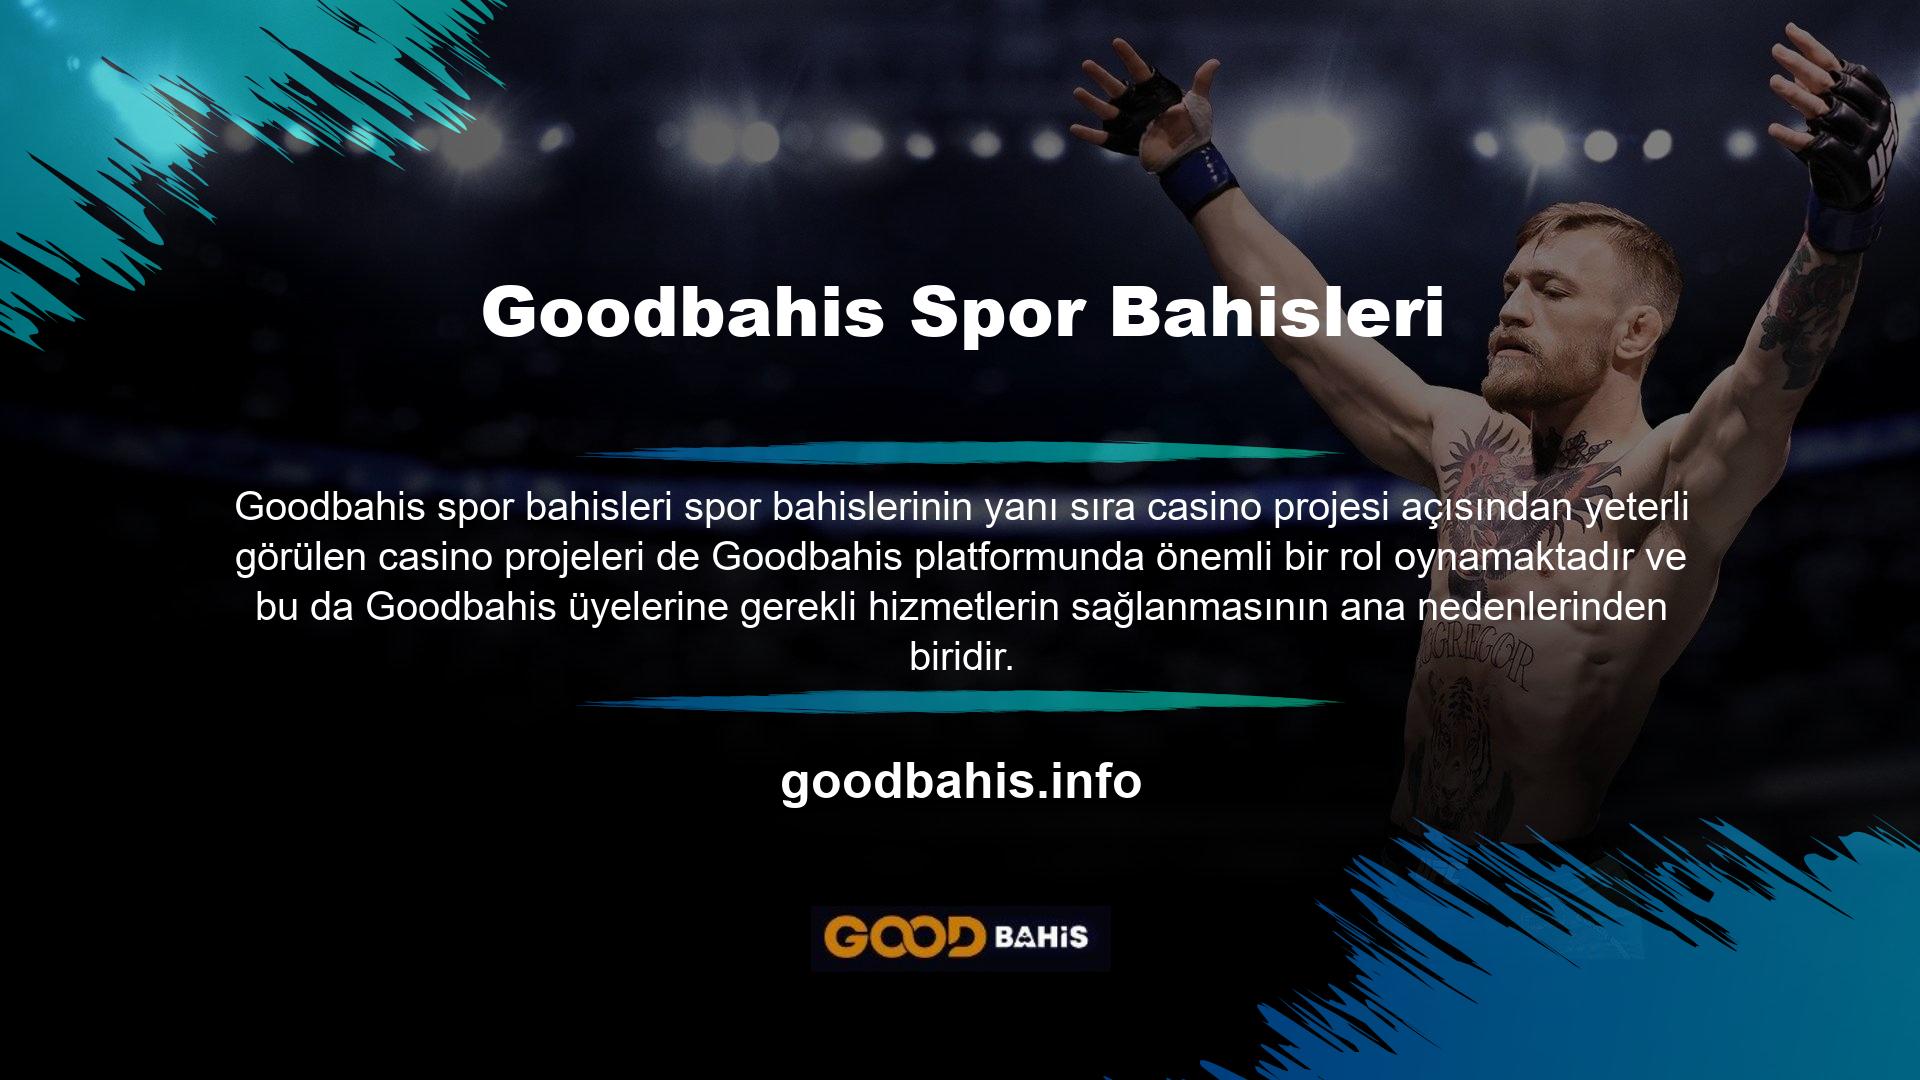 Goodbahis bahis sitesi ister spor bahisleri ister canlı bahis olsun sunduğu oranlar nedeniyle çevrimiçi bahis topluluğunun en popüler sitelerinden biri haline geldi